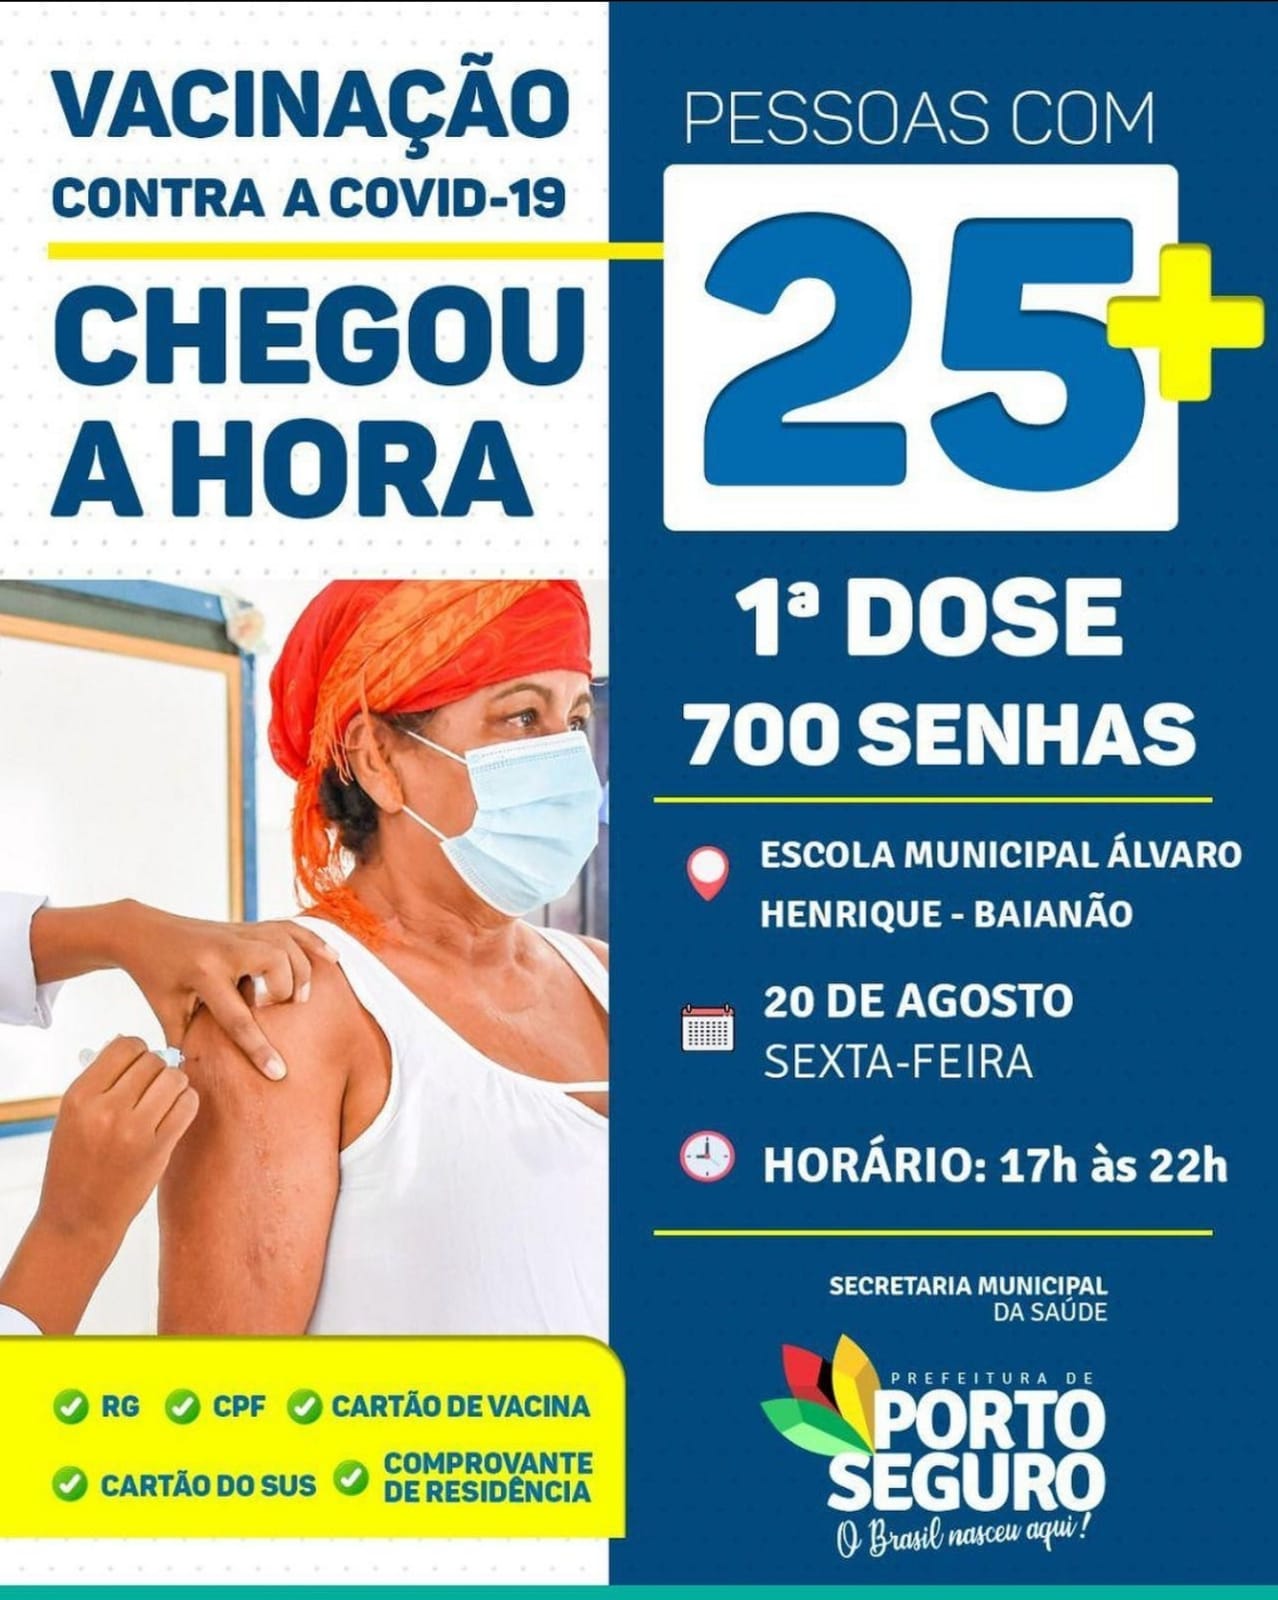 Porto Seguro: Cronograma de Vacinação contra a Covid-19 (20 de agosto) 9